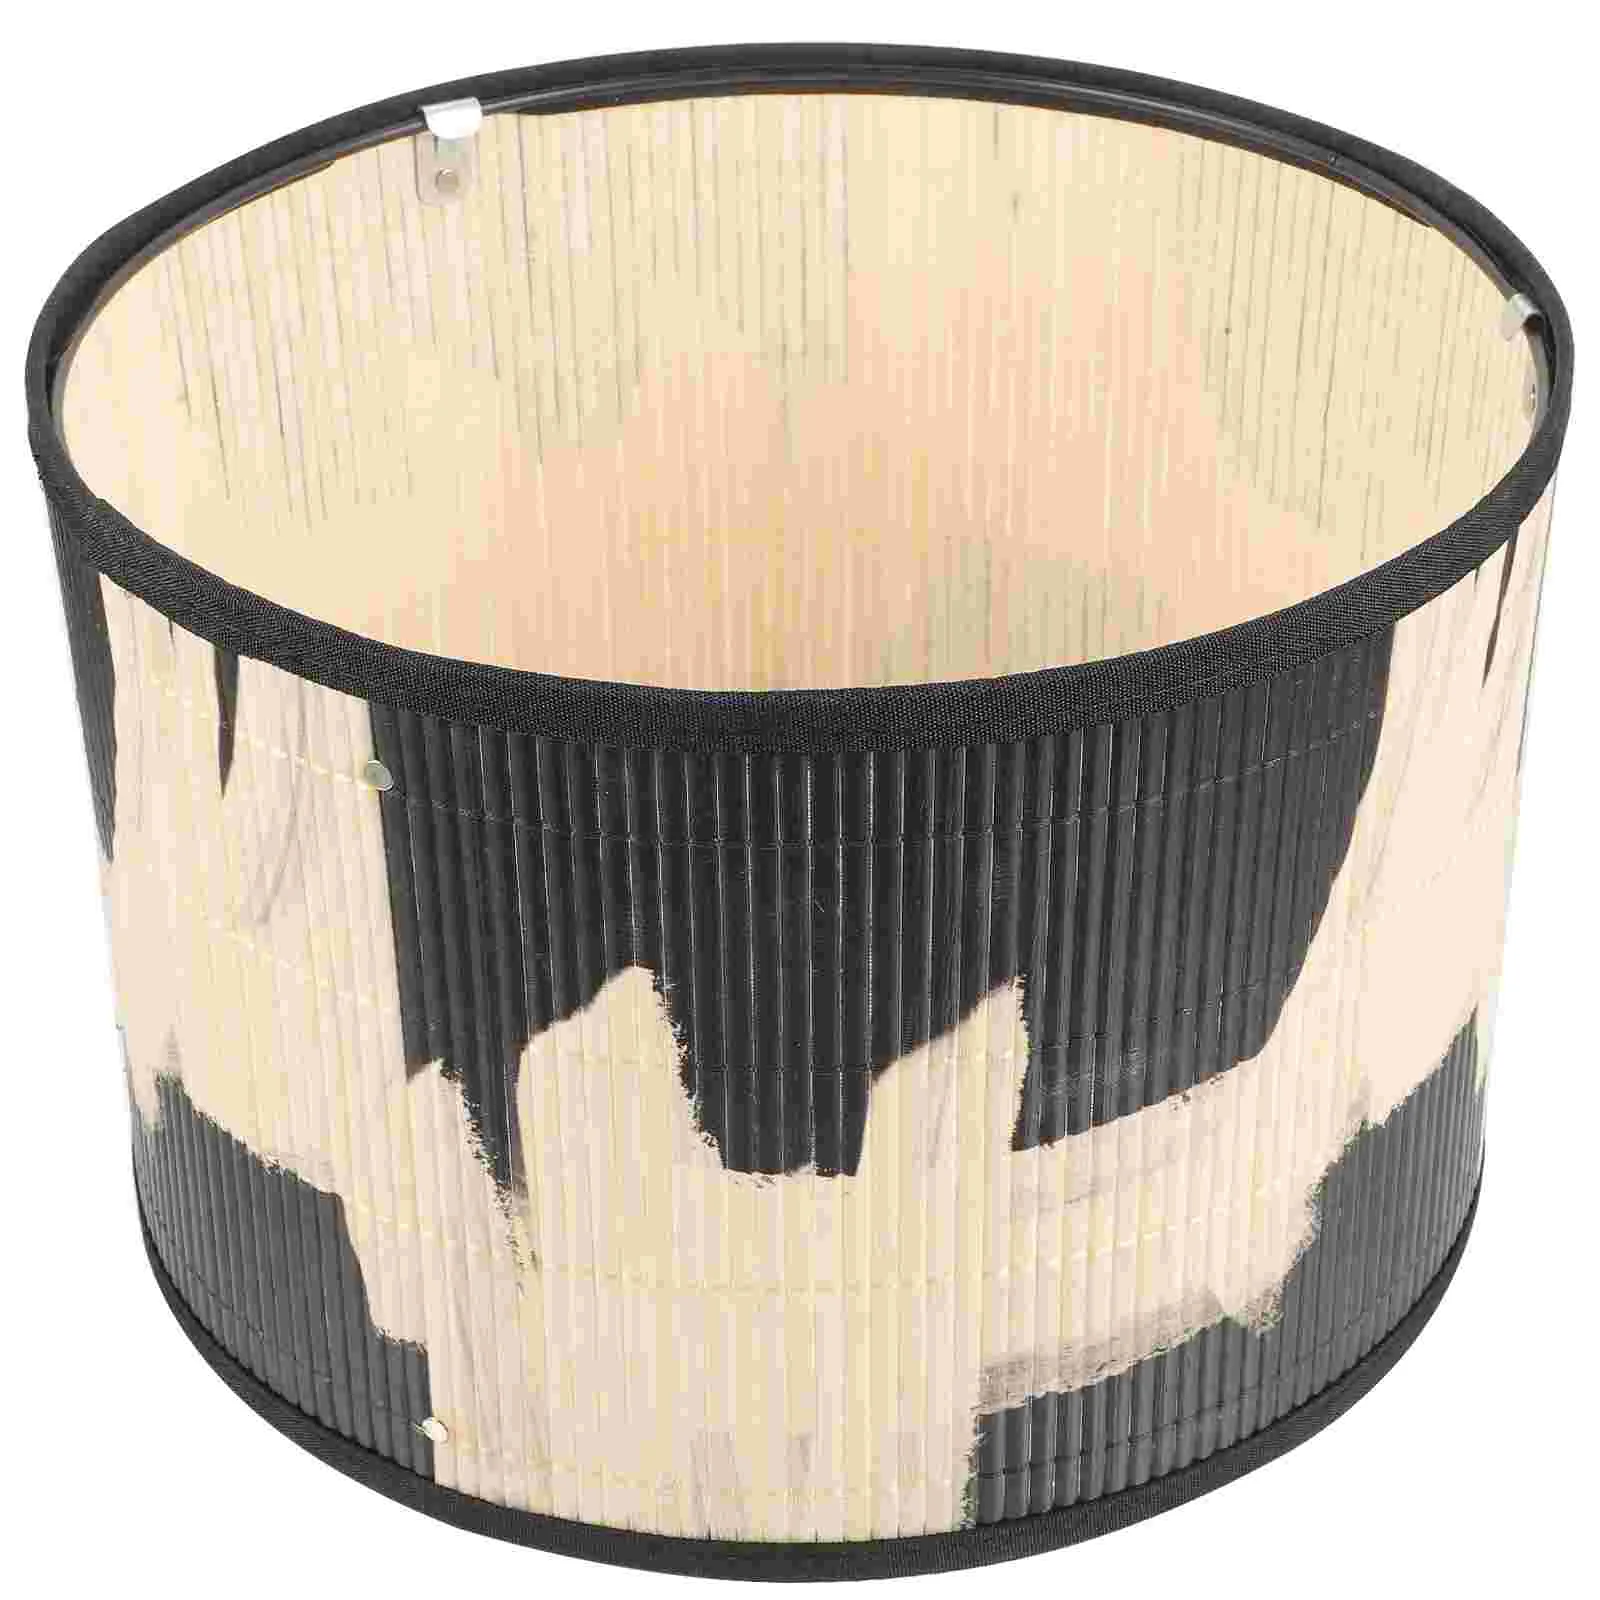 Декоративная лампа в народном стиле в стиле ретро с абстрактным принтом, абажур для росписи бамбуковых изделий